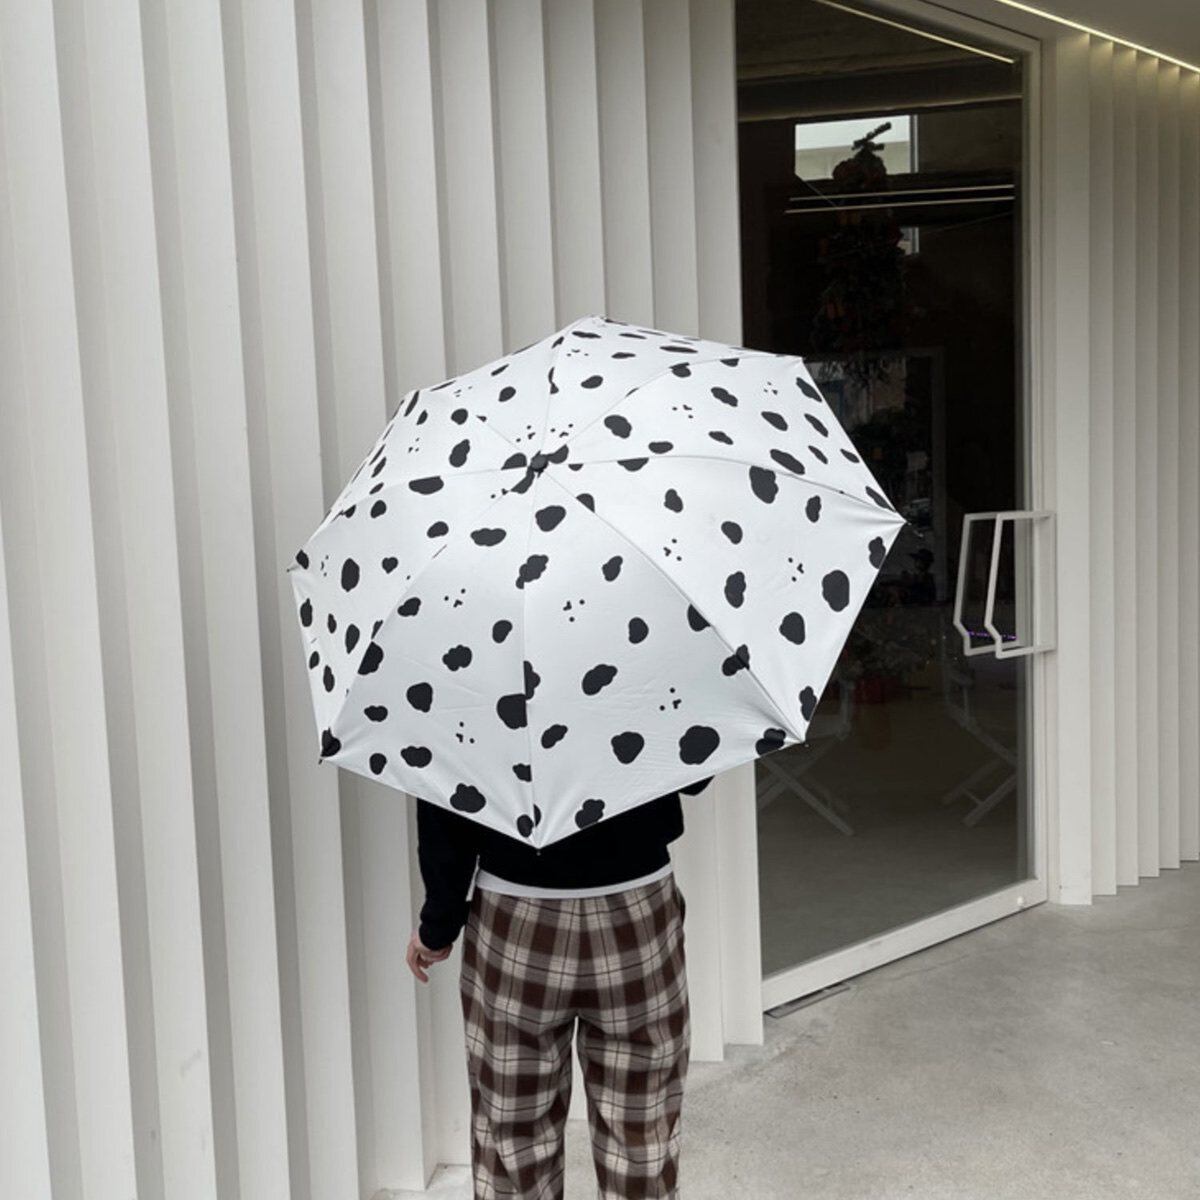 傘 折り畳み傘 雨傘 日傘 韓国 晴雨兼用 雨天兼用 おしゃれ かわいい 模様 シンプル 女性 レディース 通勤 通学 モノクロクラウド柄傘 セレクトショップオンリーユー